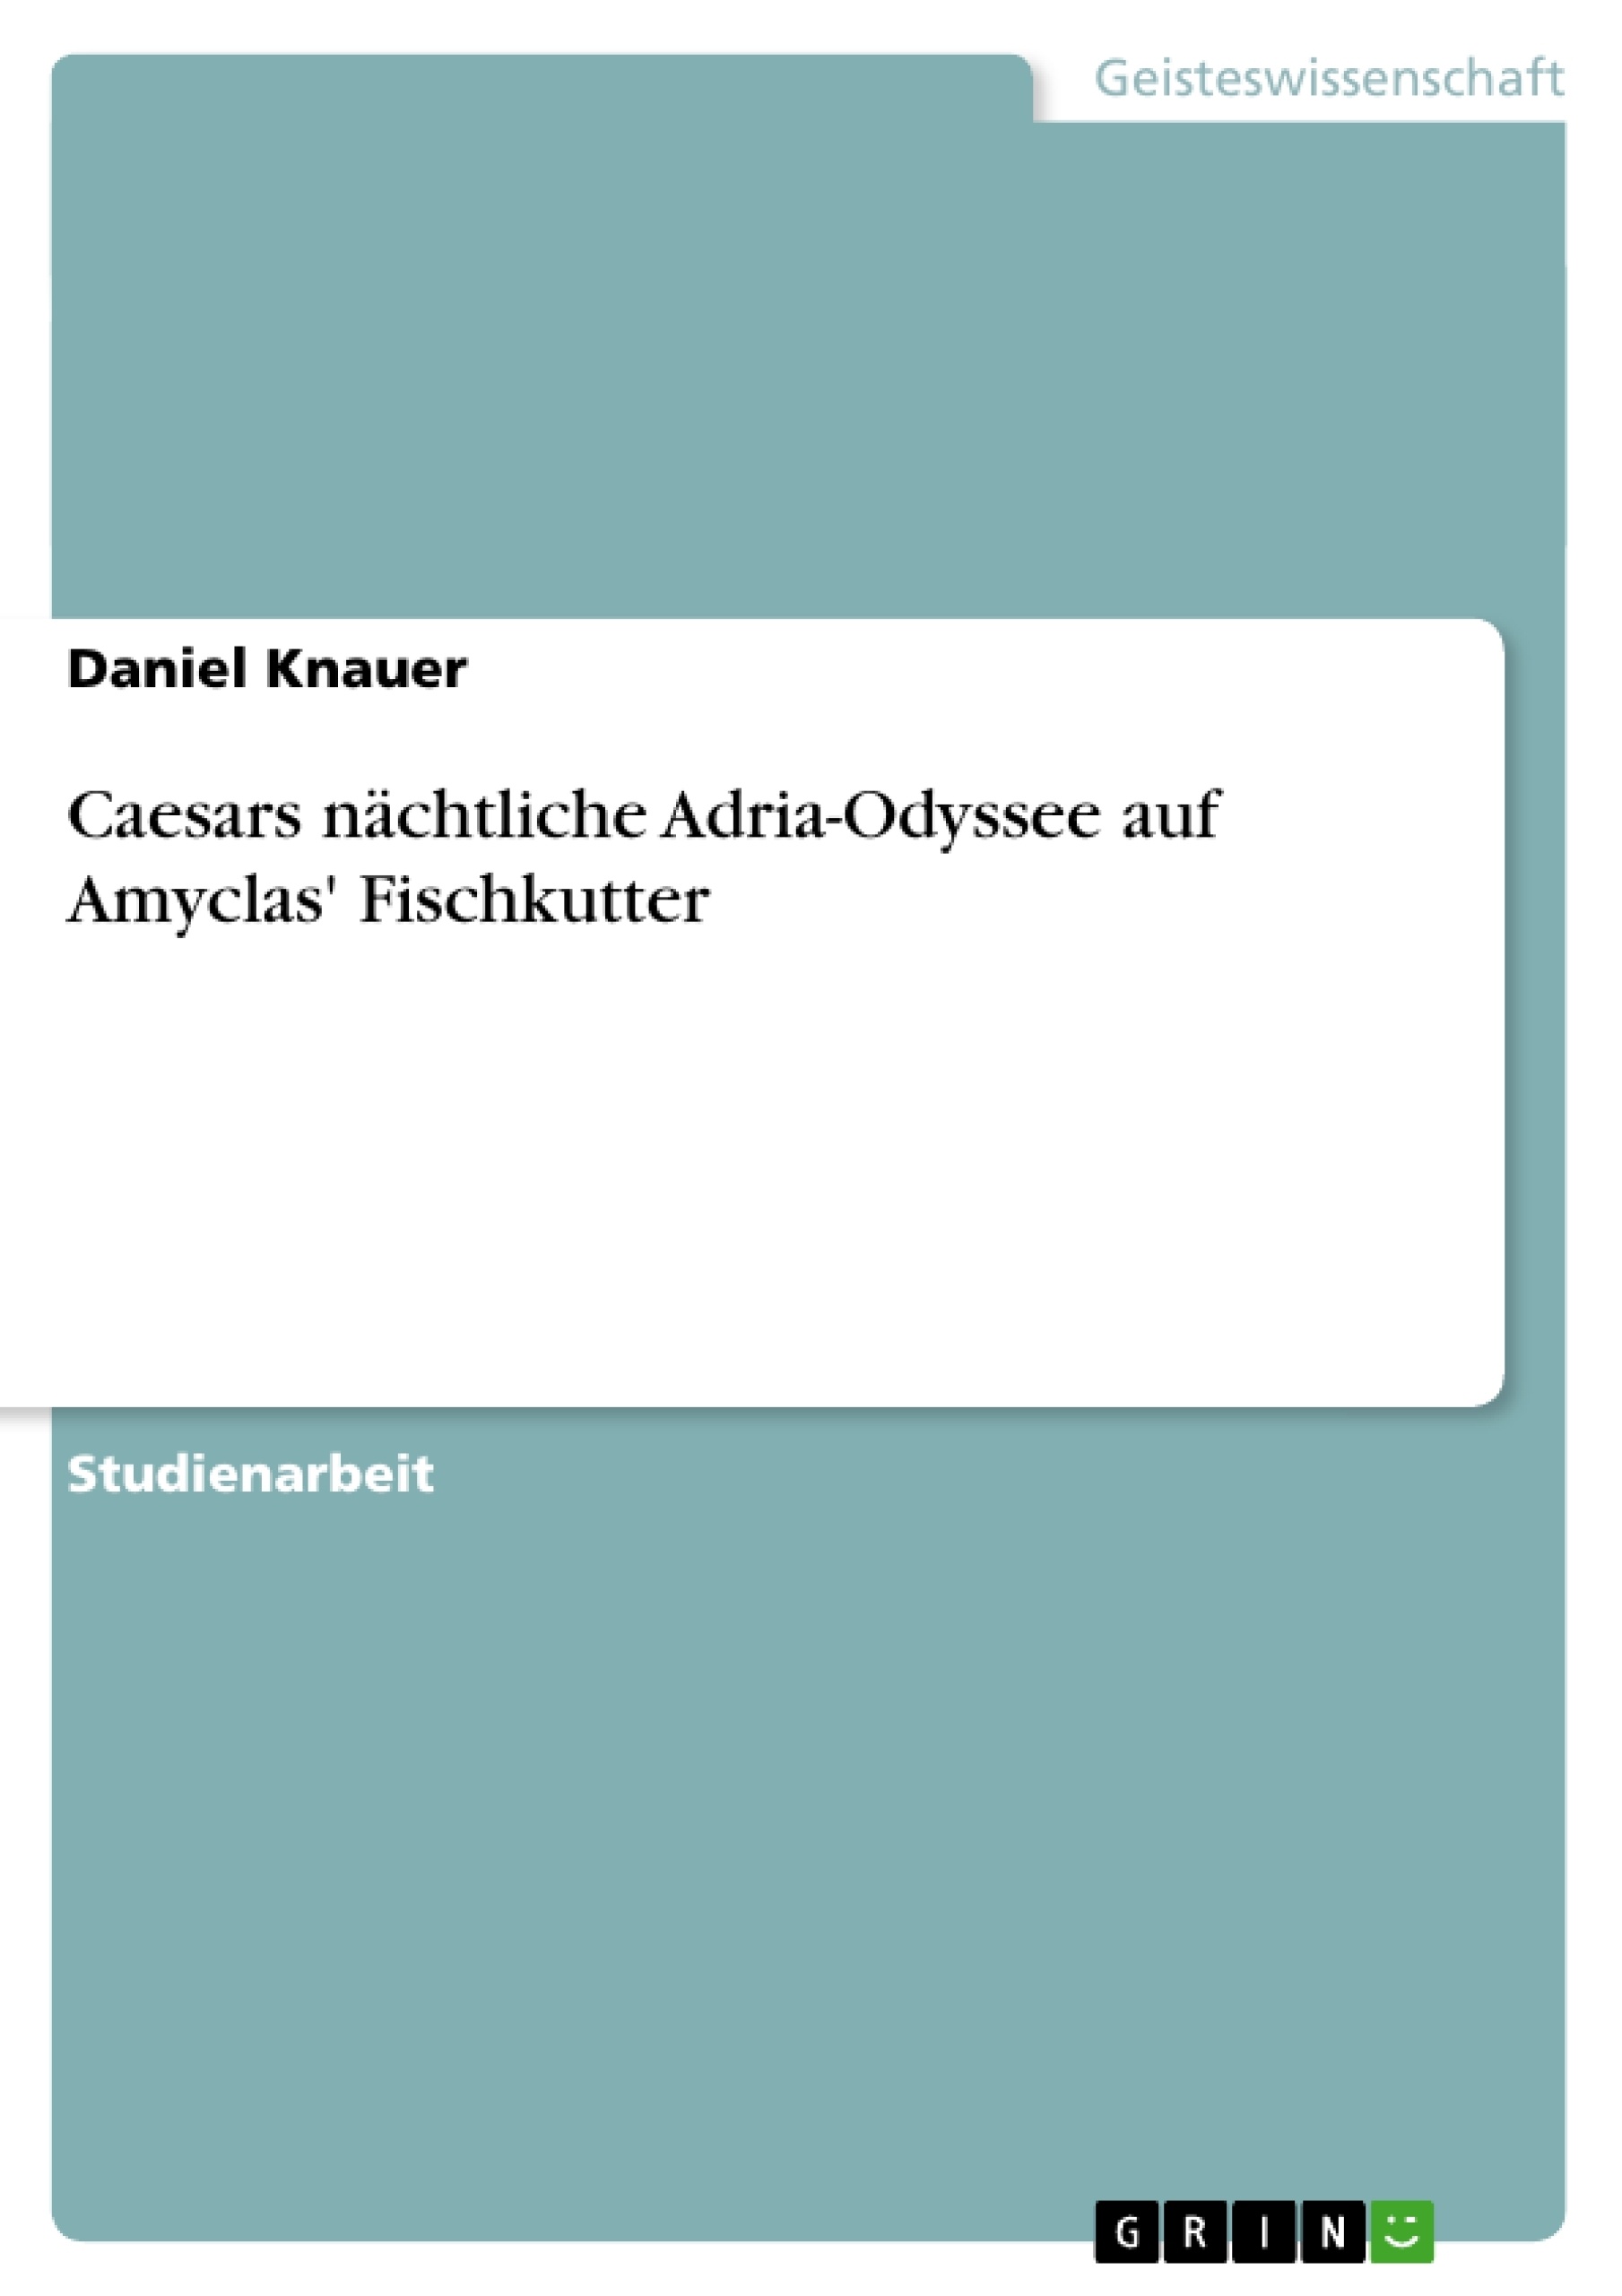 Título: Caesars nächtliche Adria-Odyssee auf Amyclas' Fischkutter